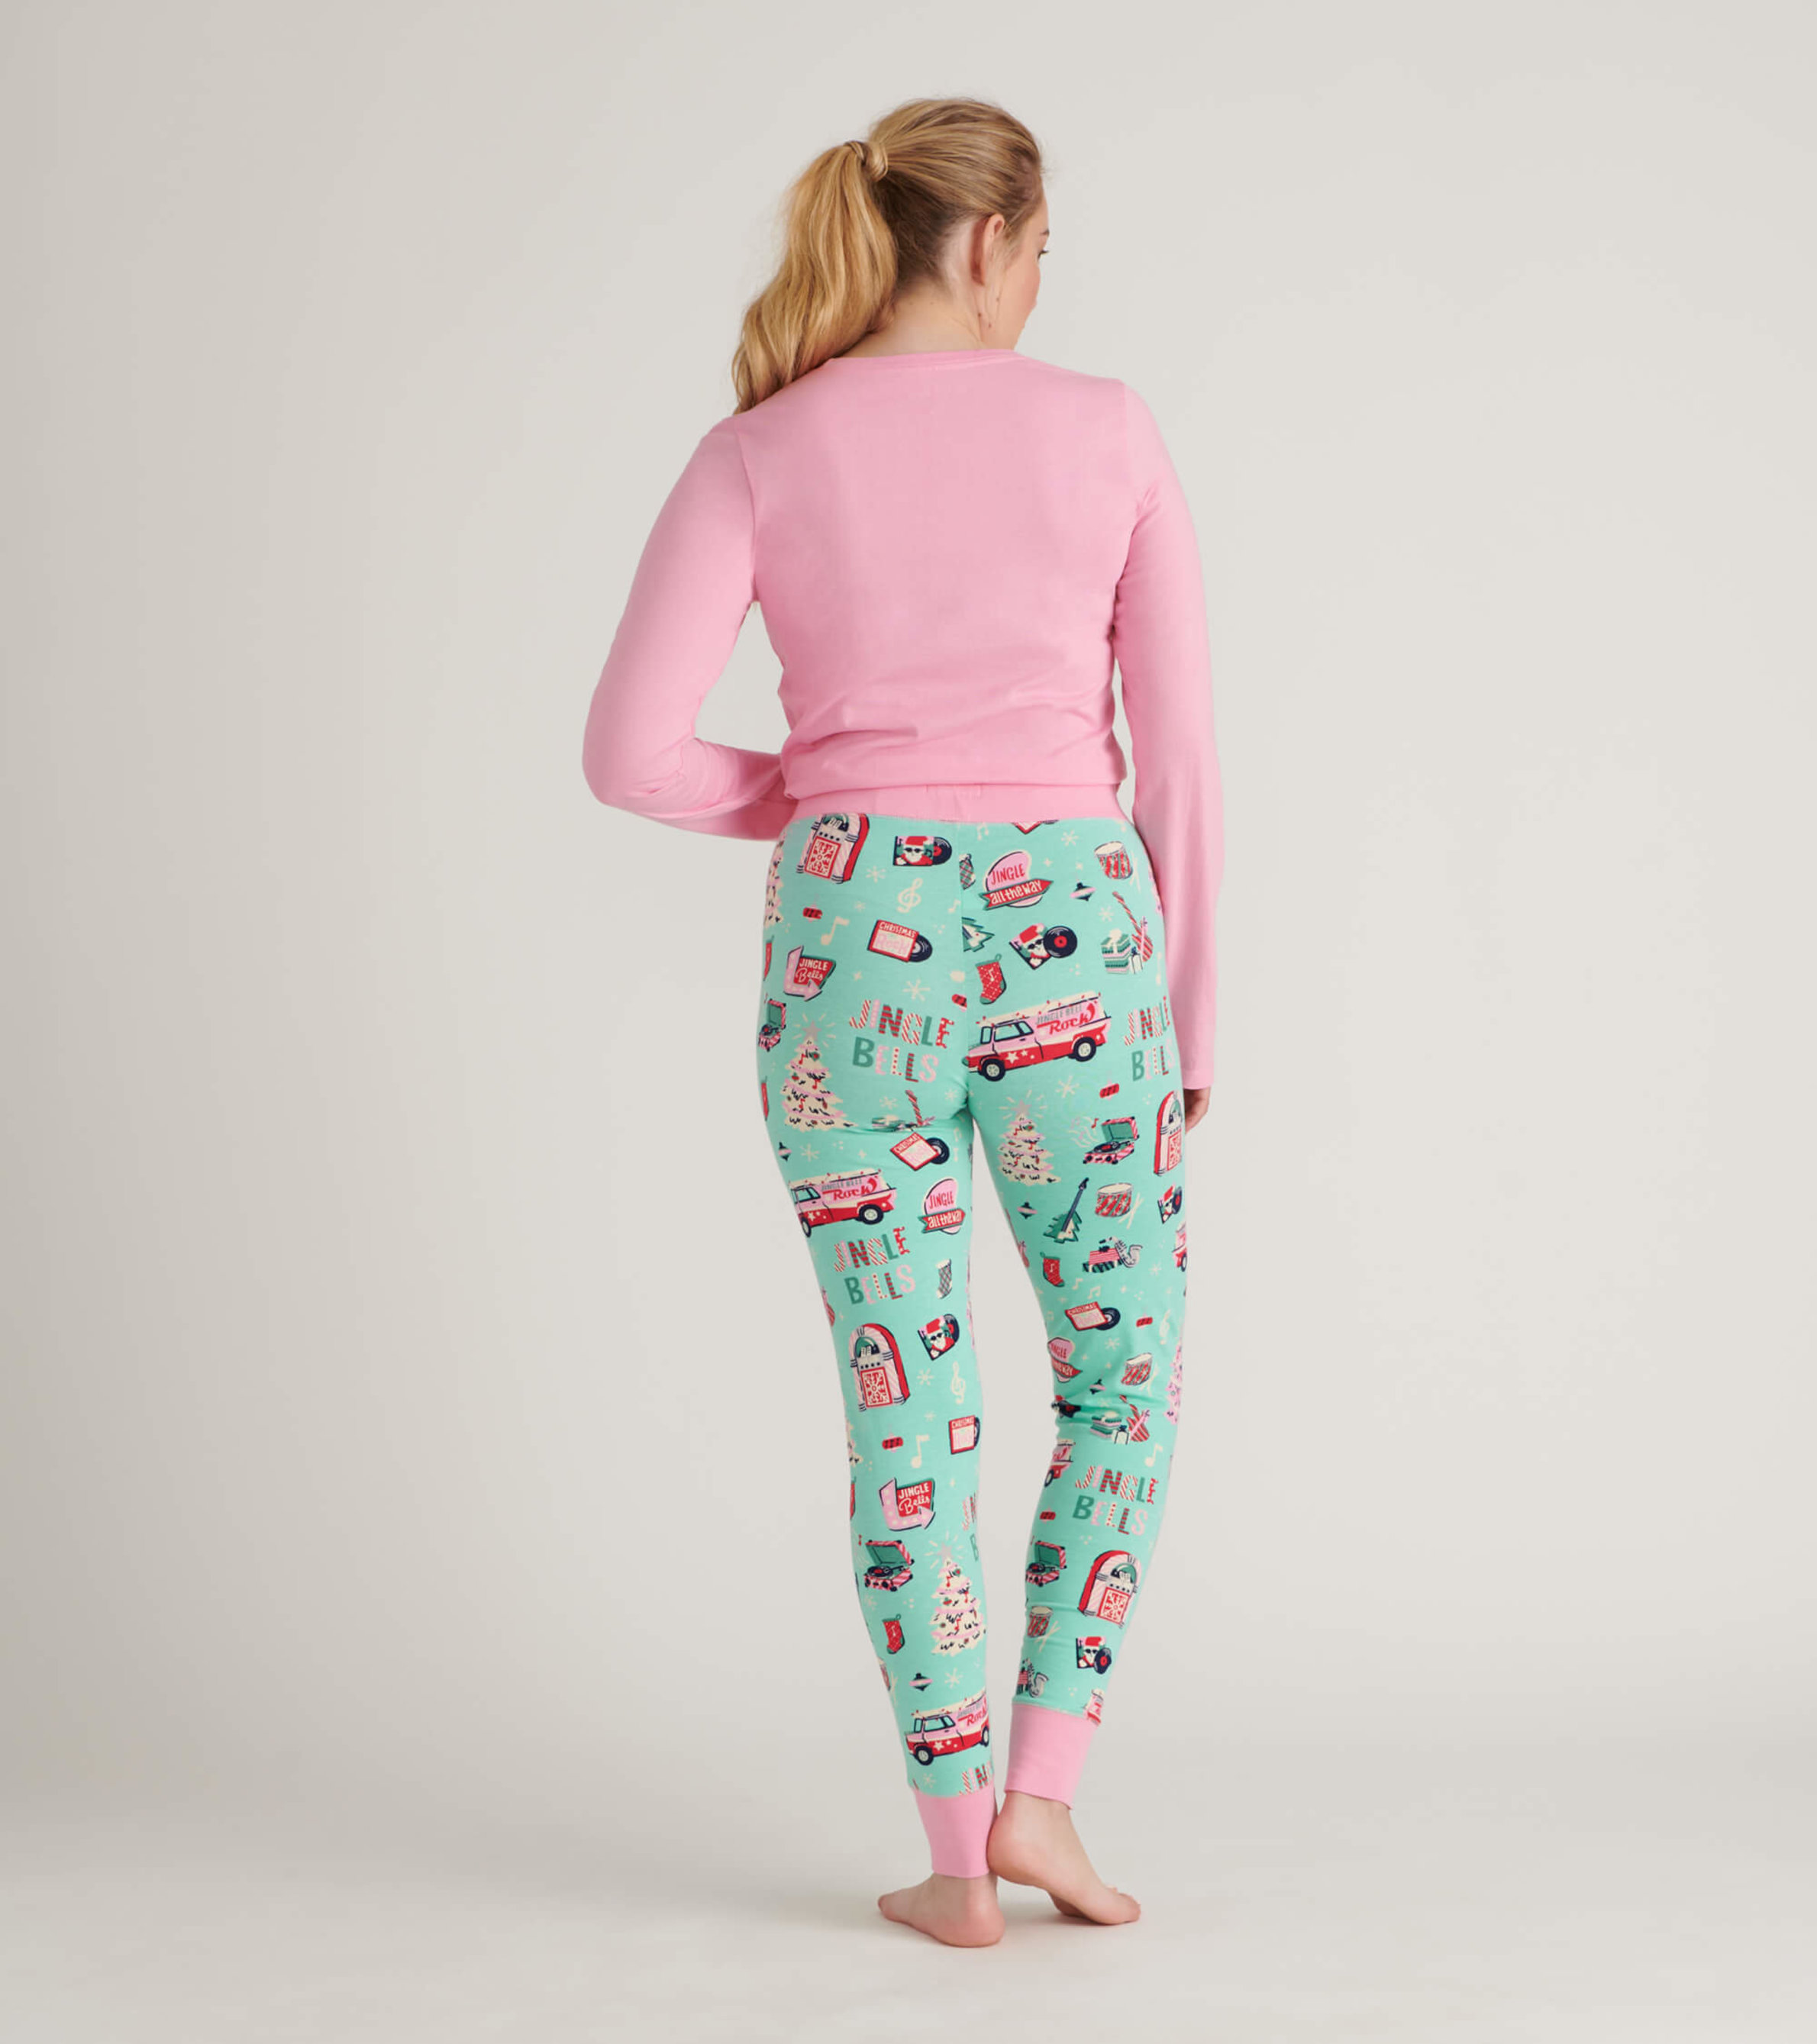 Ellos Women's Rib Trim Sleep Leggings Pajamas 